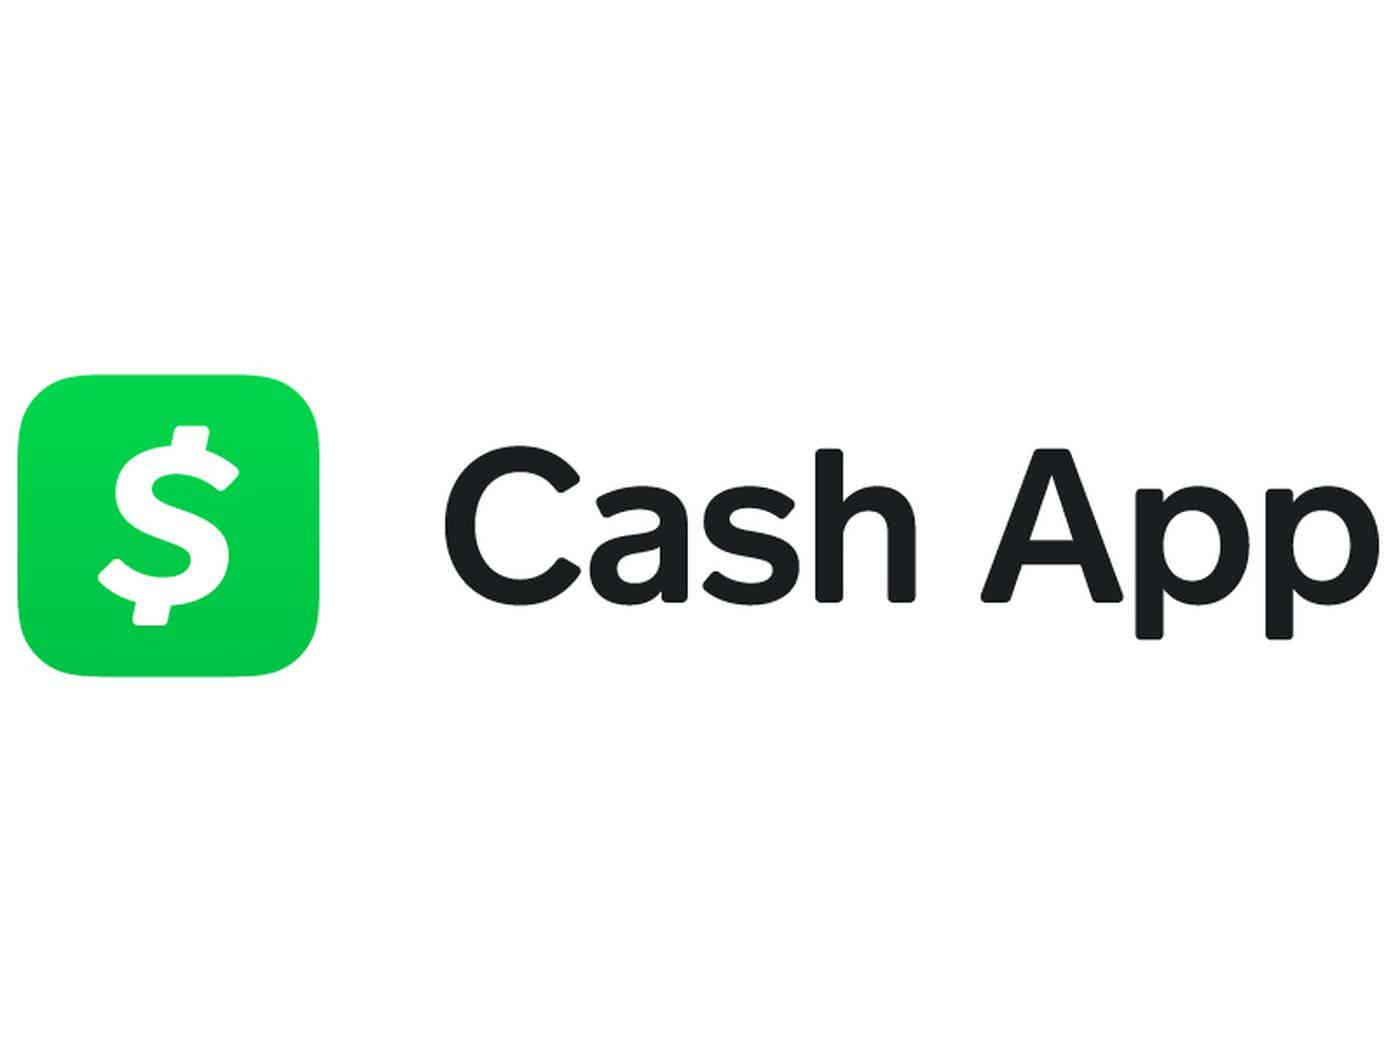 Ganhe dinheiro online no site da Cash App.